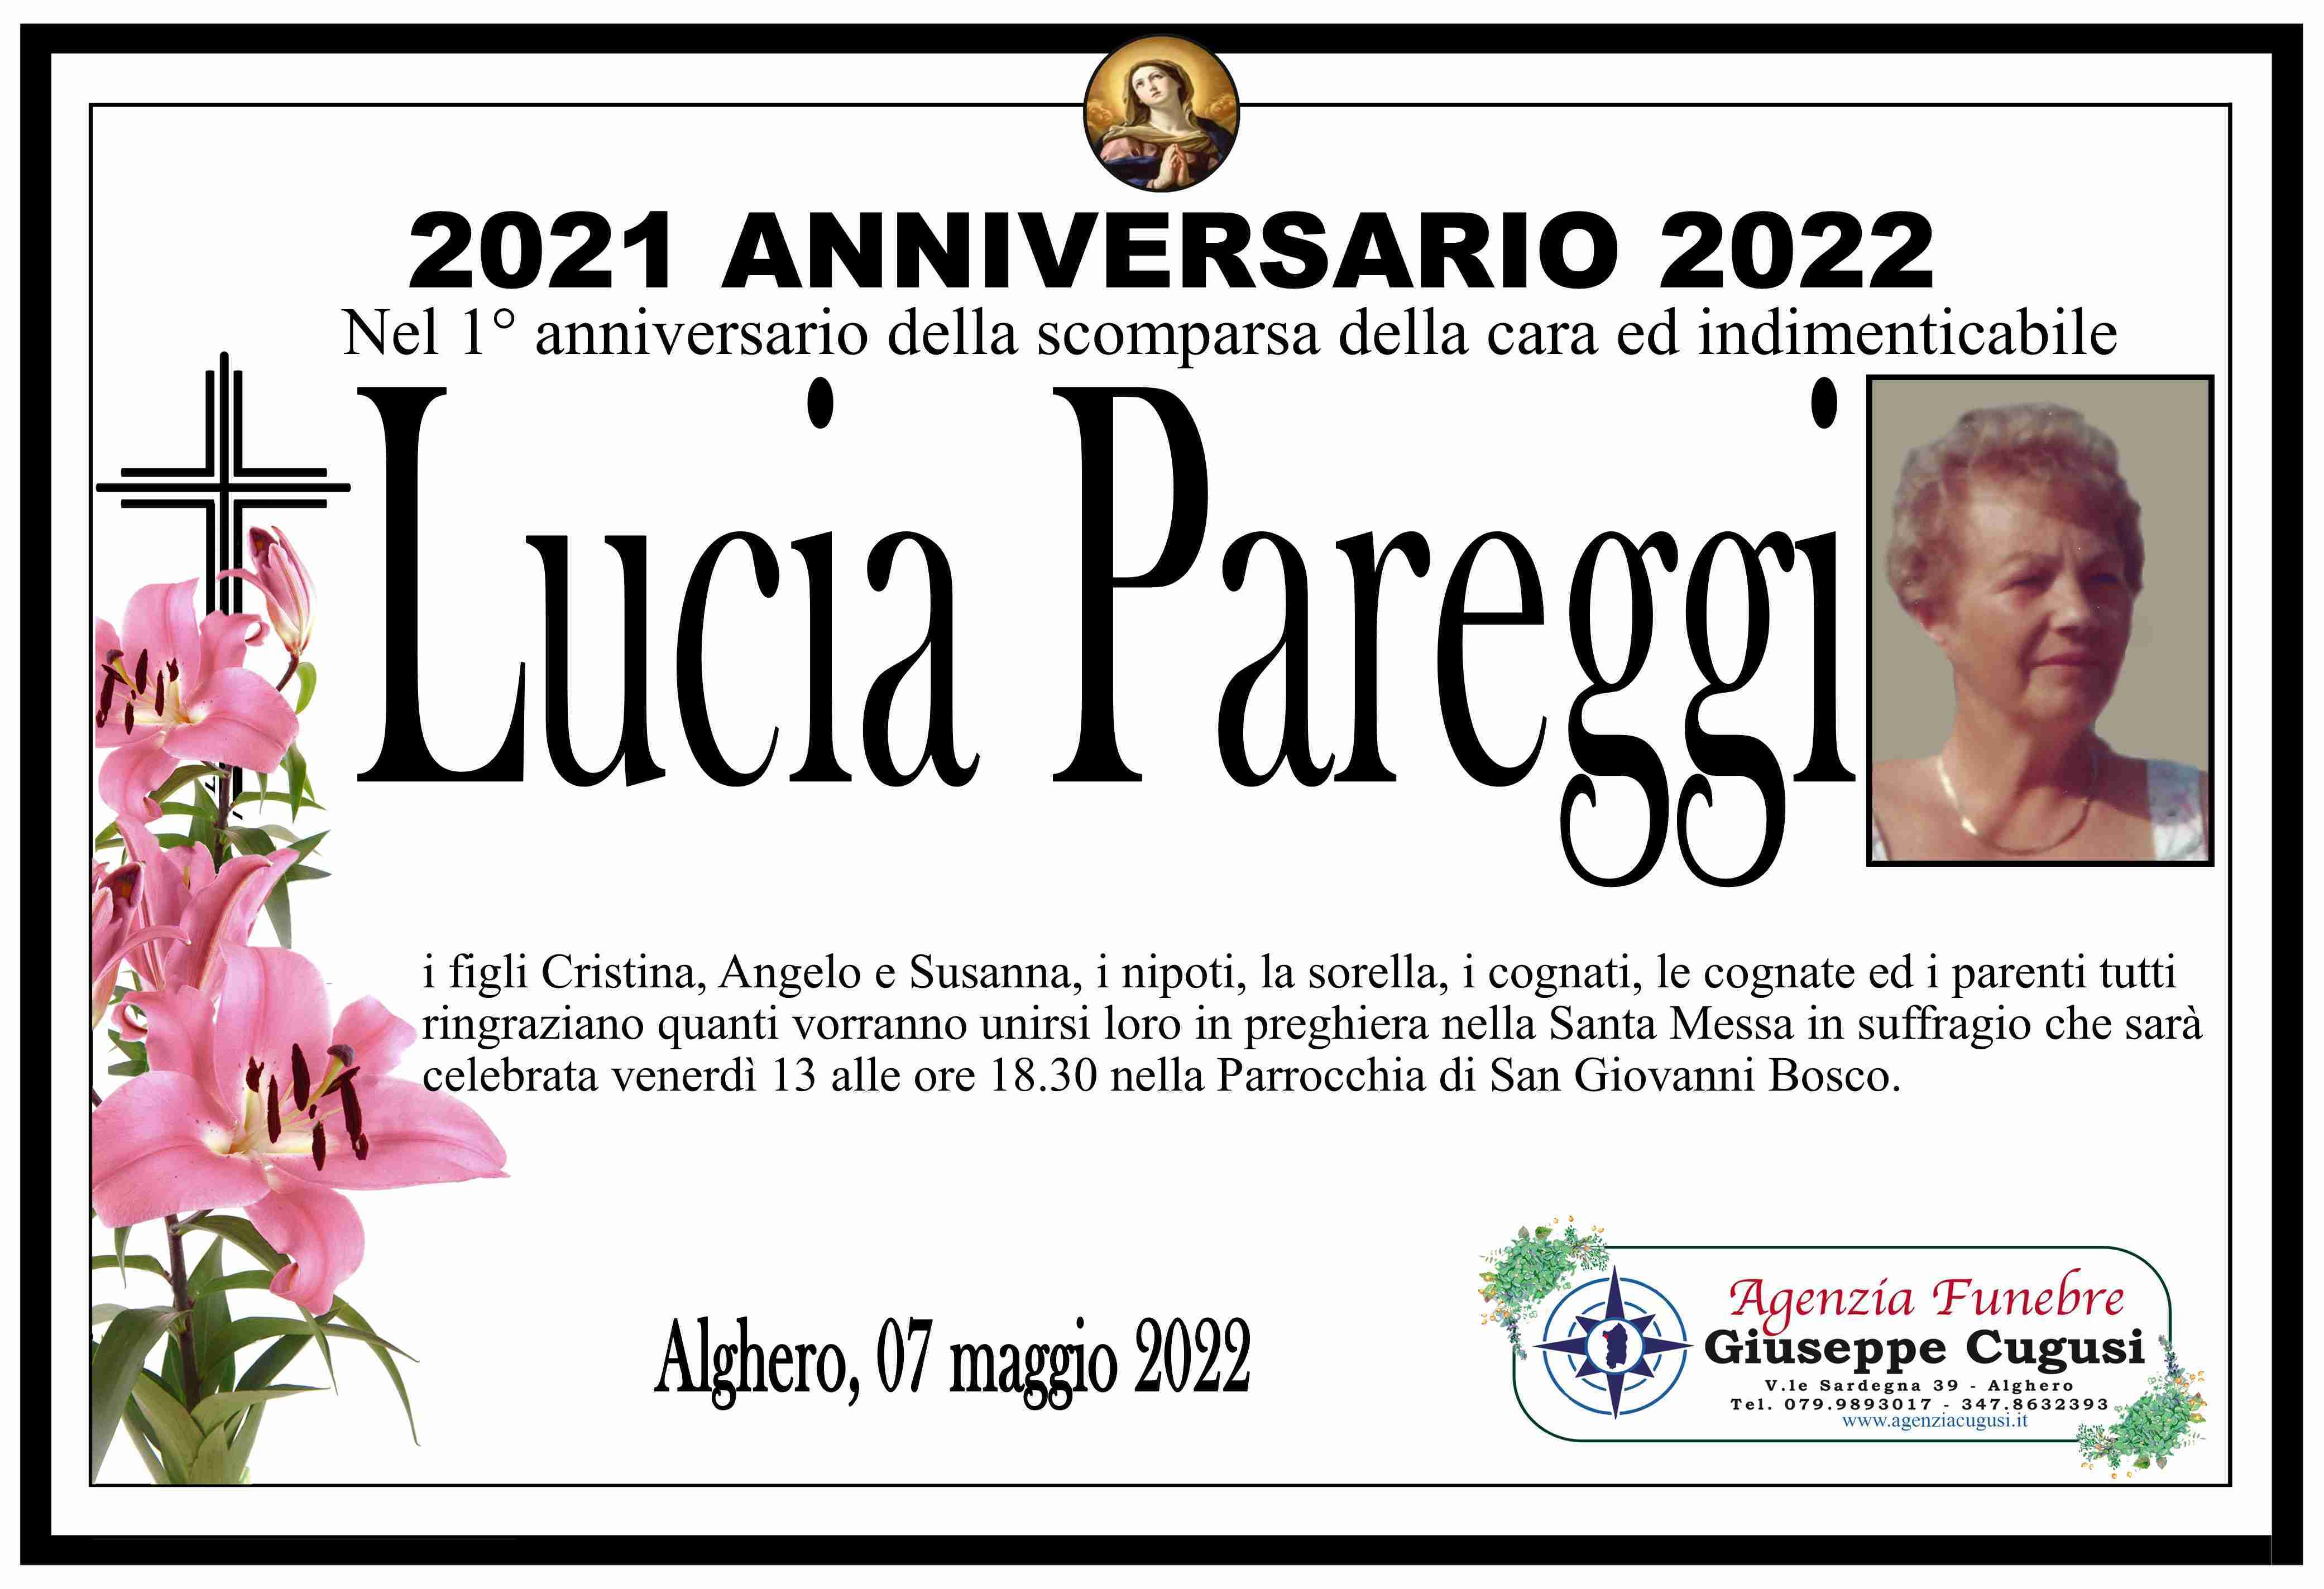 Lucia Pareggi